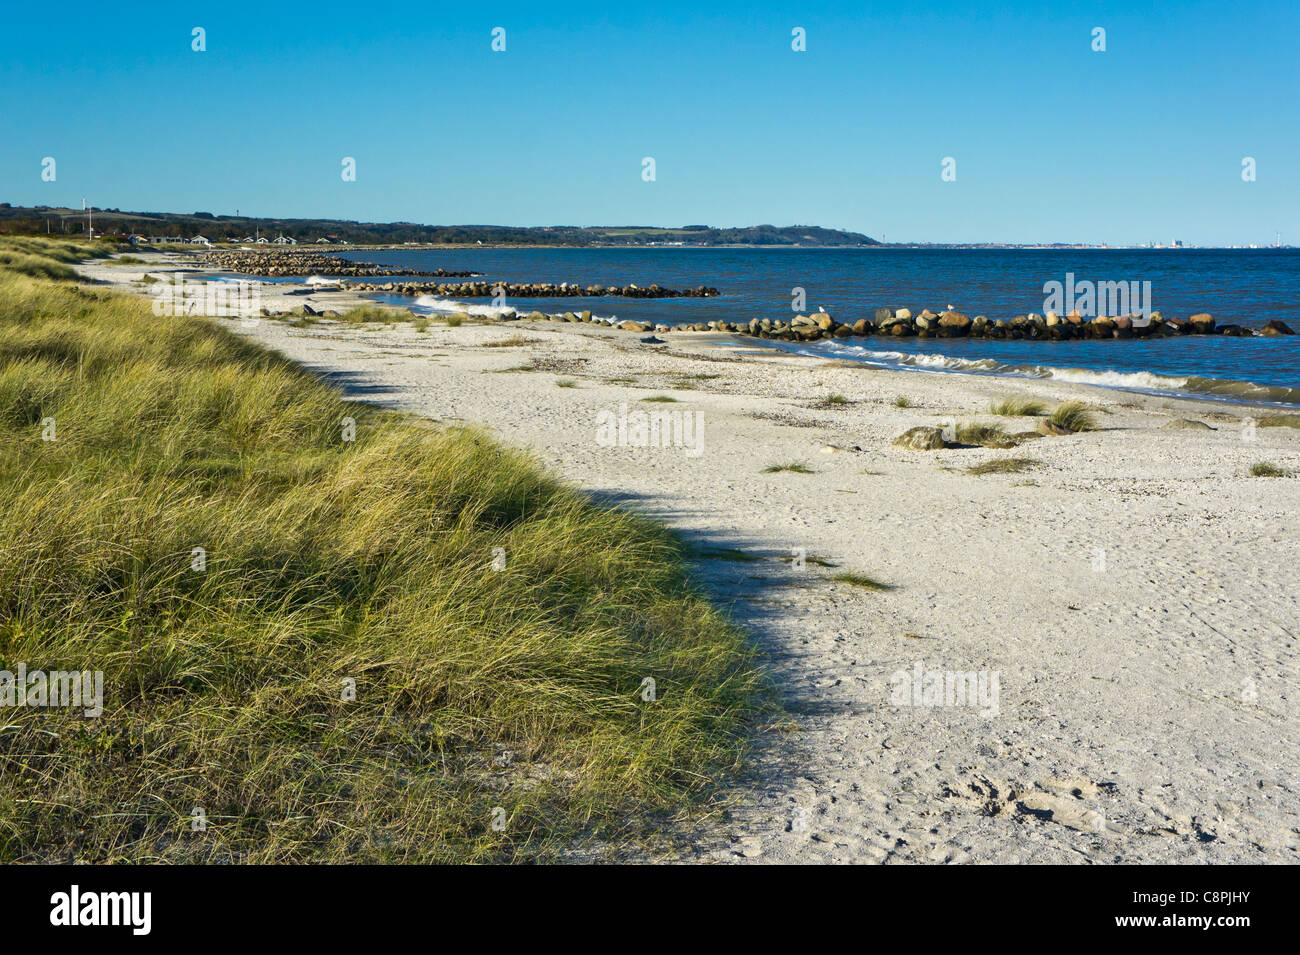 Der Strand nördlich von Sæby Hafen in Sæby Jütland Dänemark mit Steinen gelegt wie Maulwürfe oder Bollwerke um weitere Erosion zu verhindern. Stockfoto